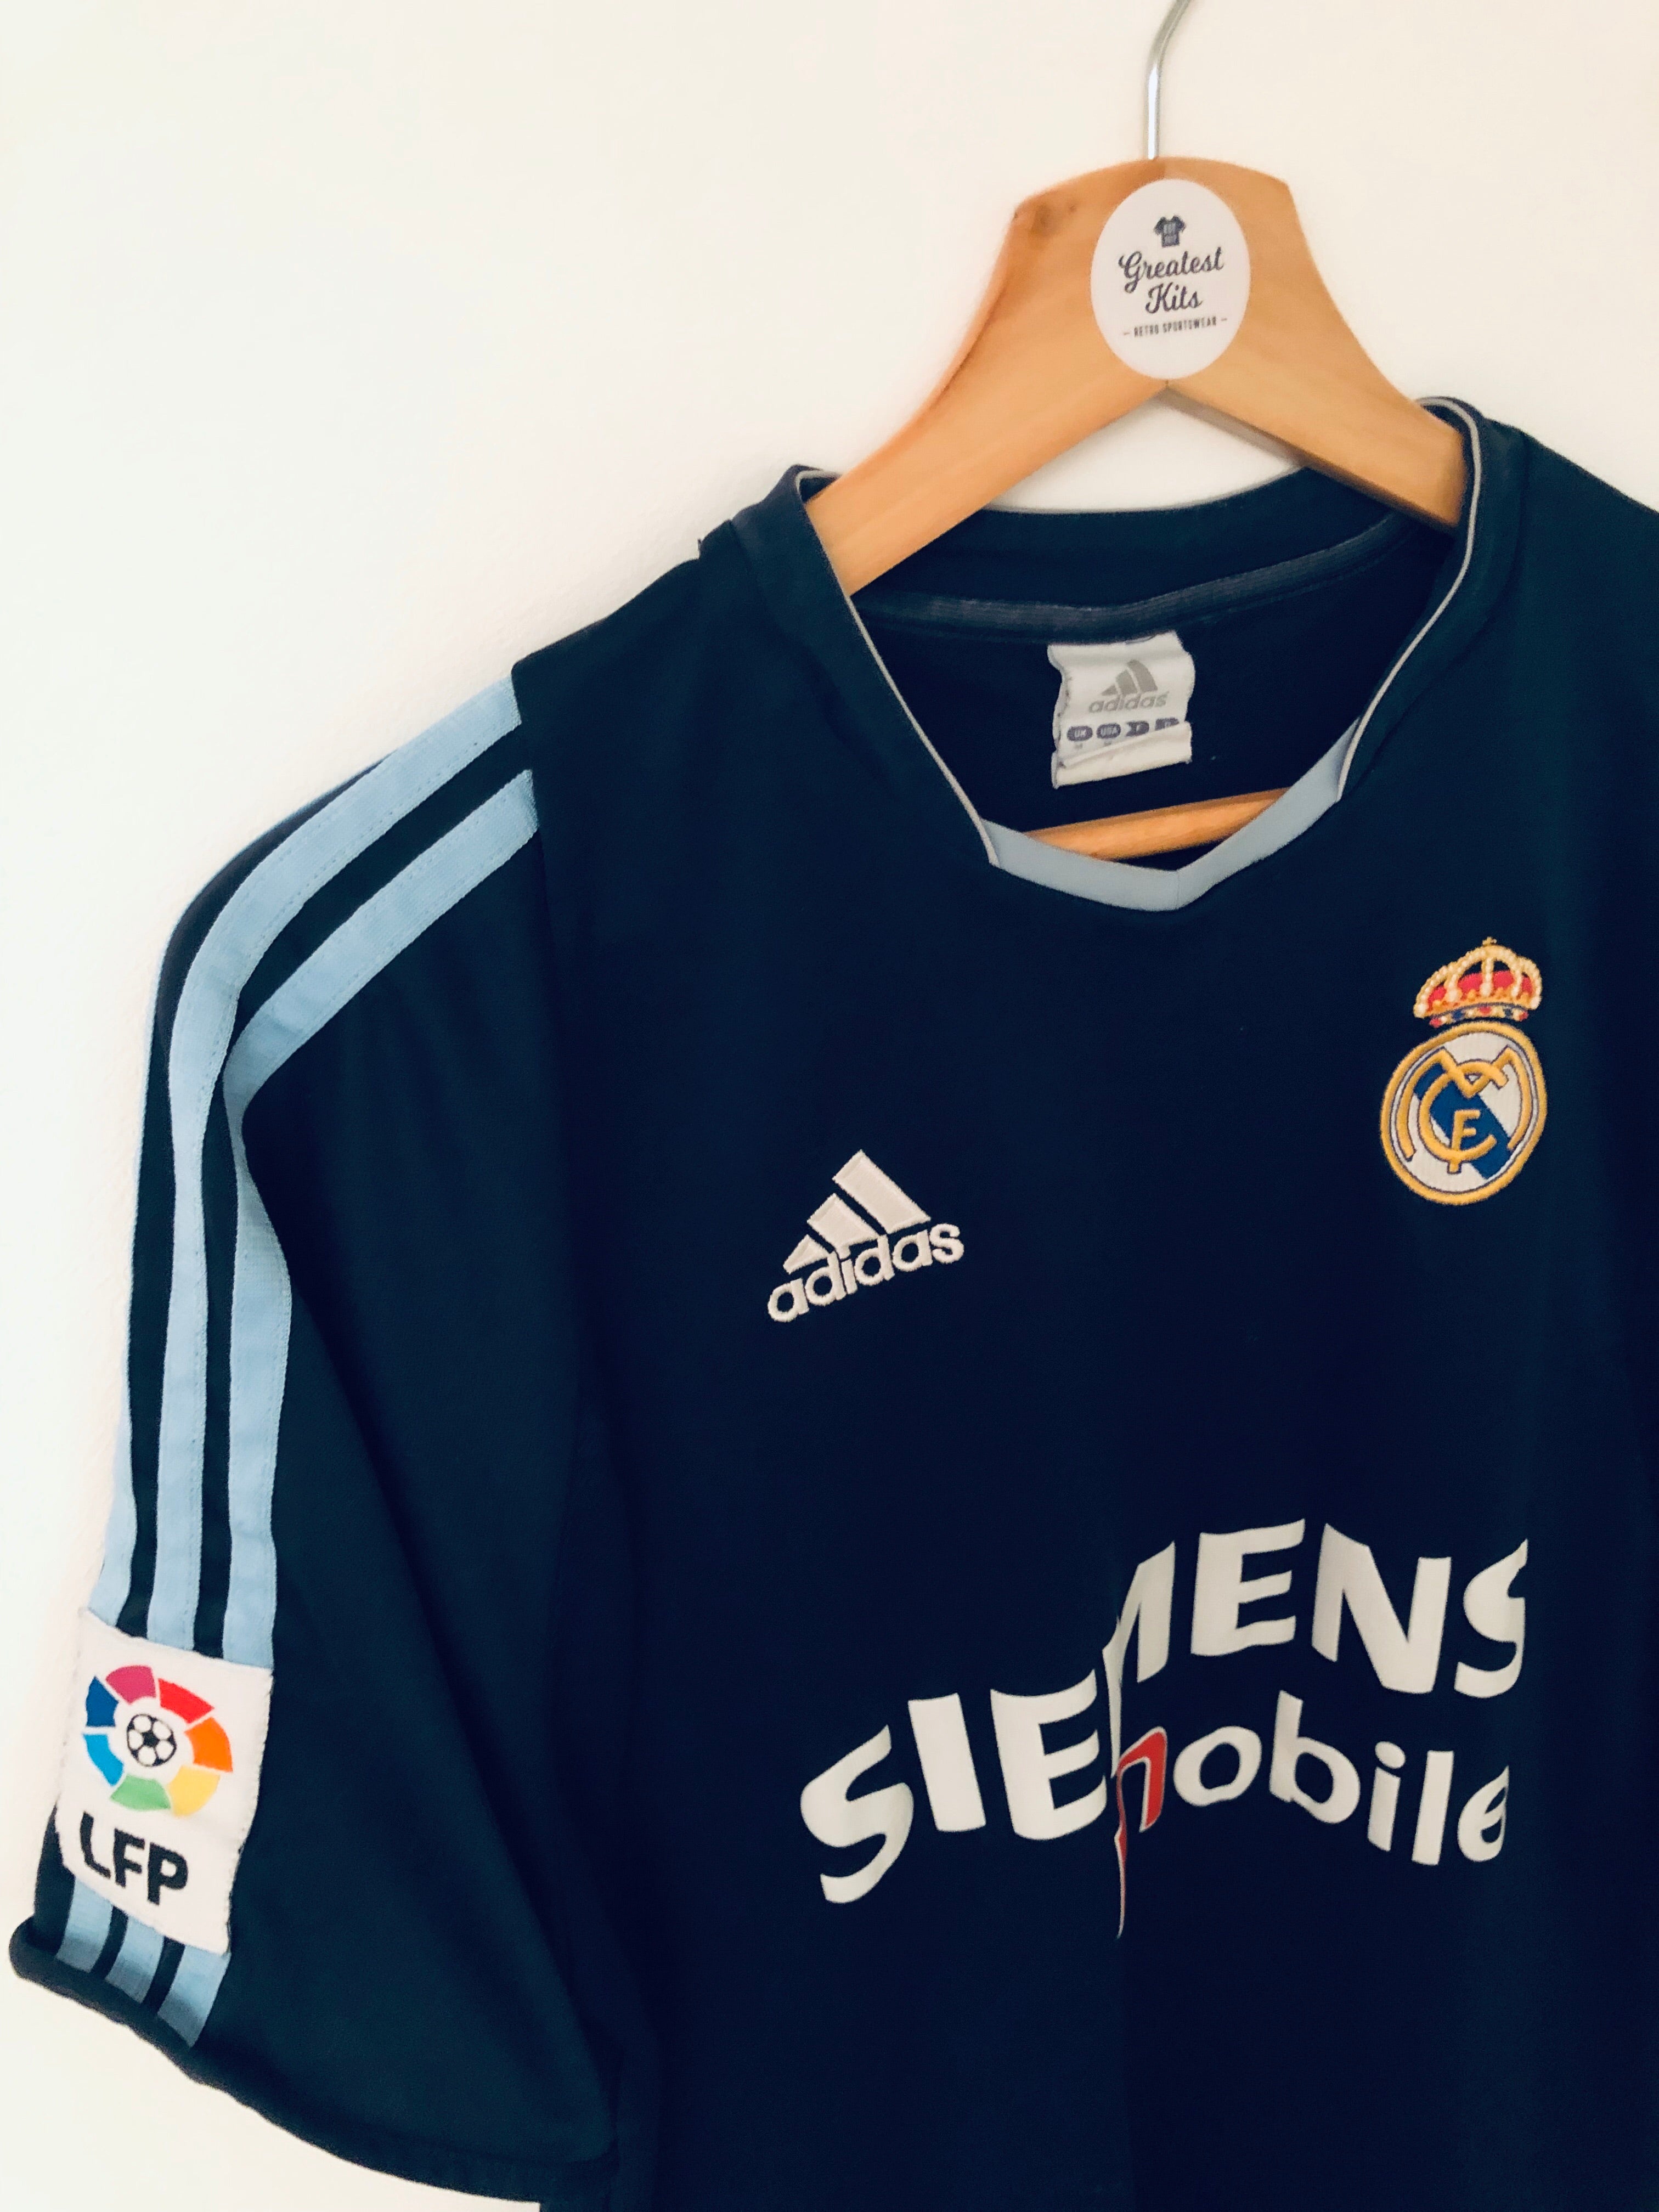 2003/04 Camiseta visitante del Real Madrid (M) 8/10